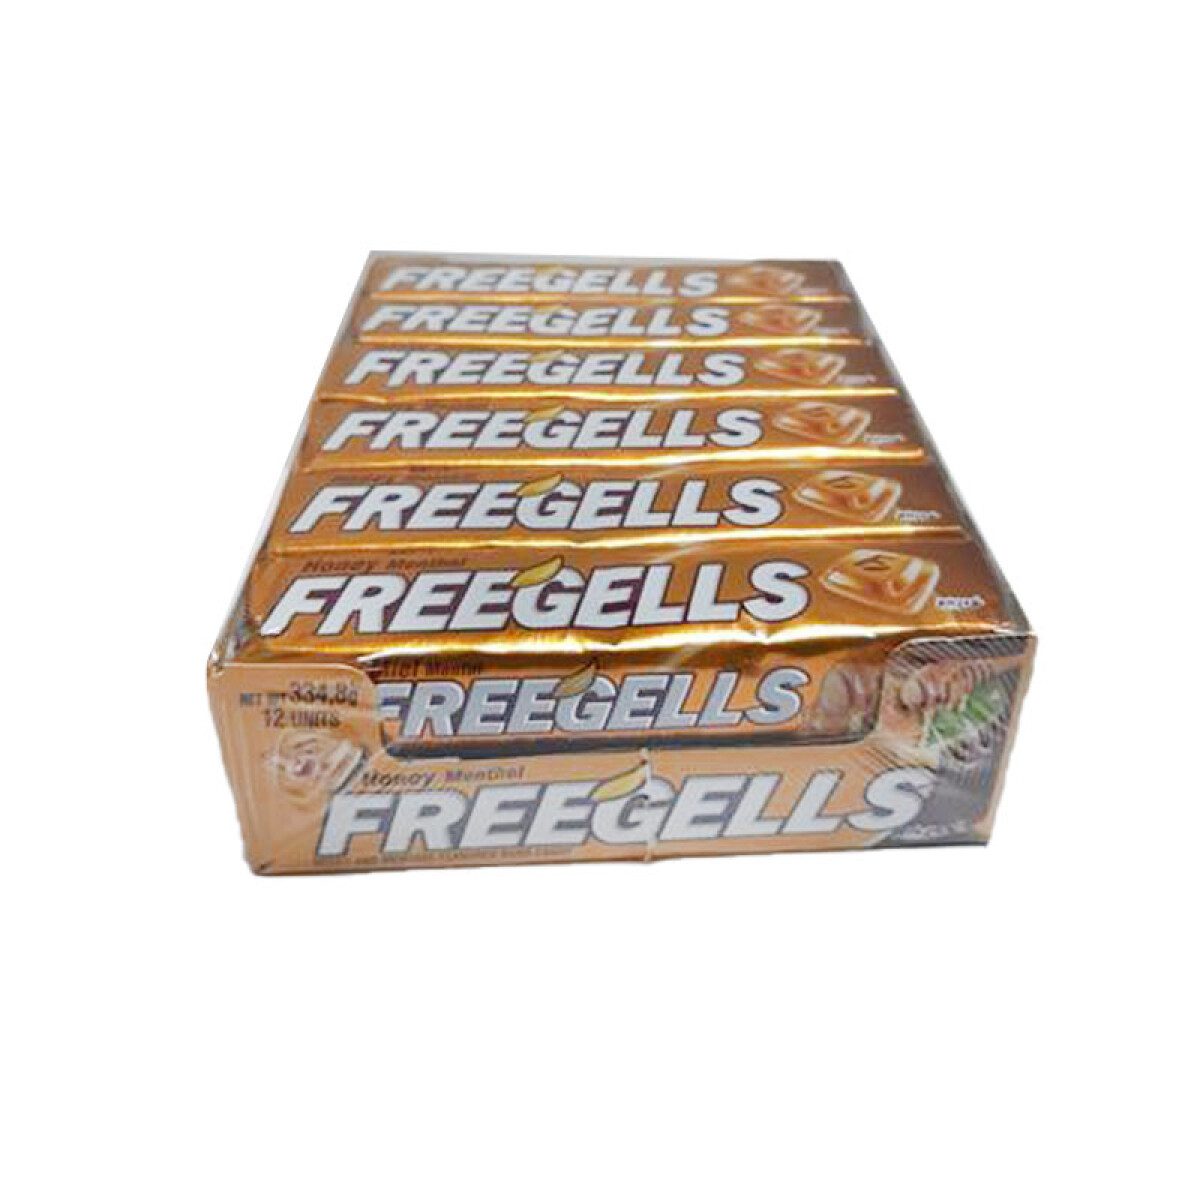 Pastillas FREEGELLS x12 Unidades - Miel Mentol 